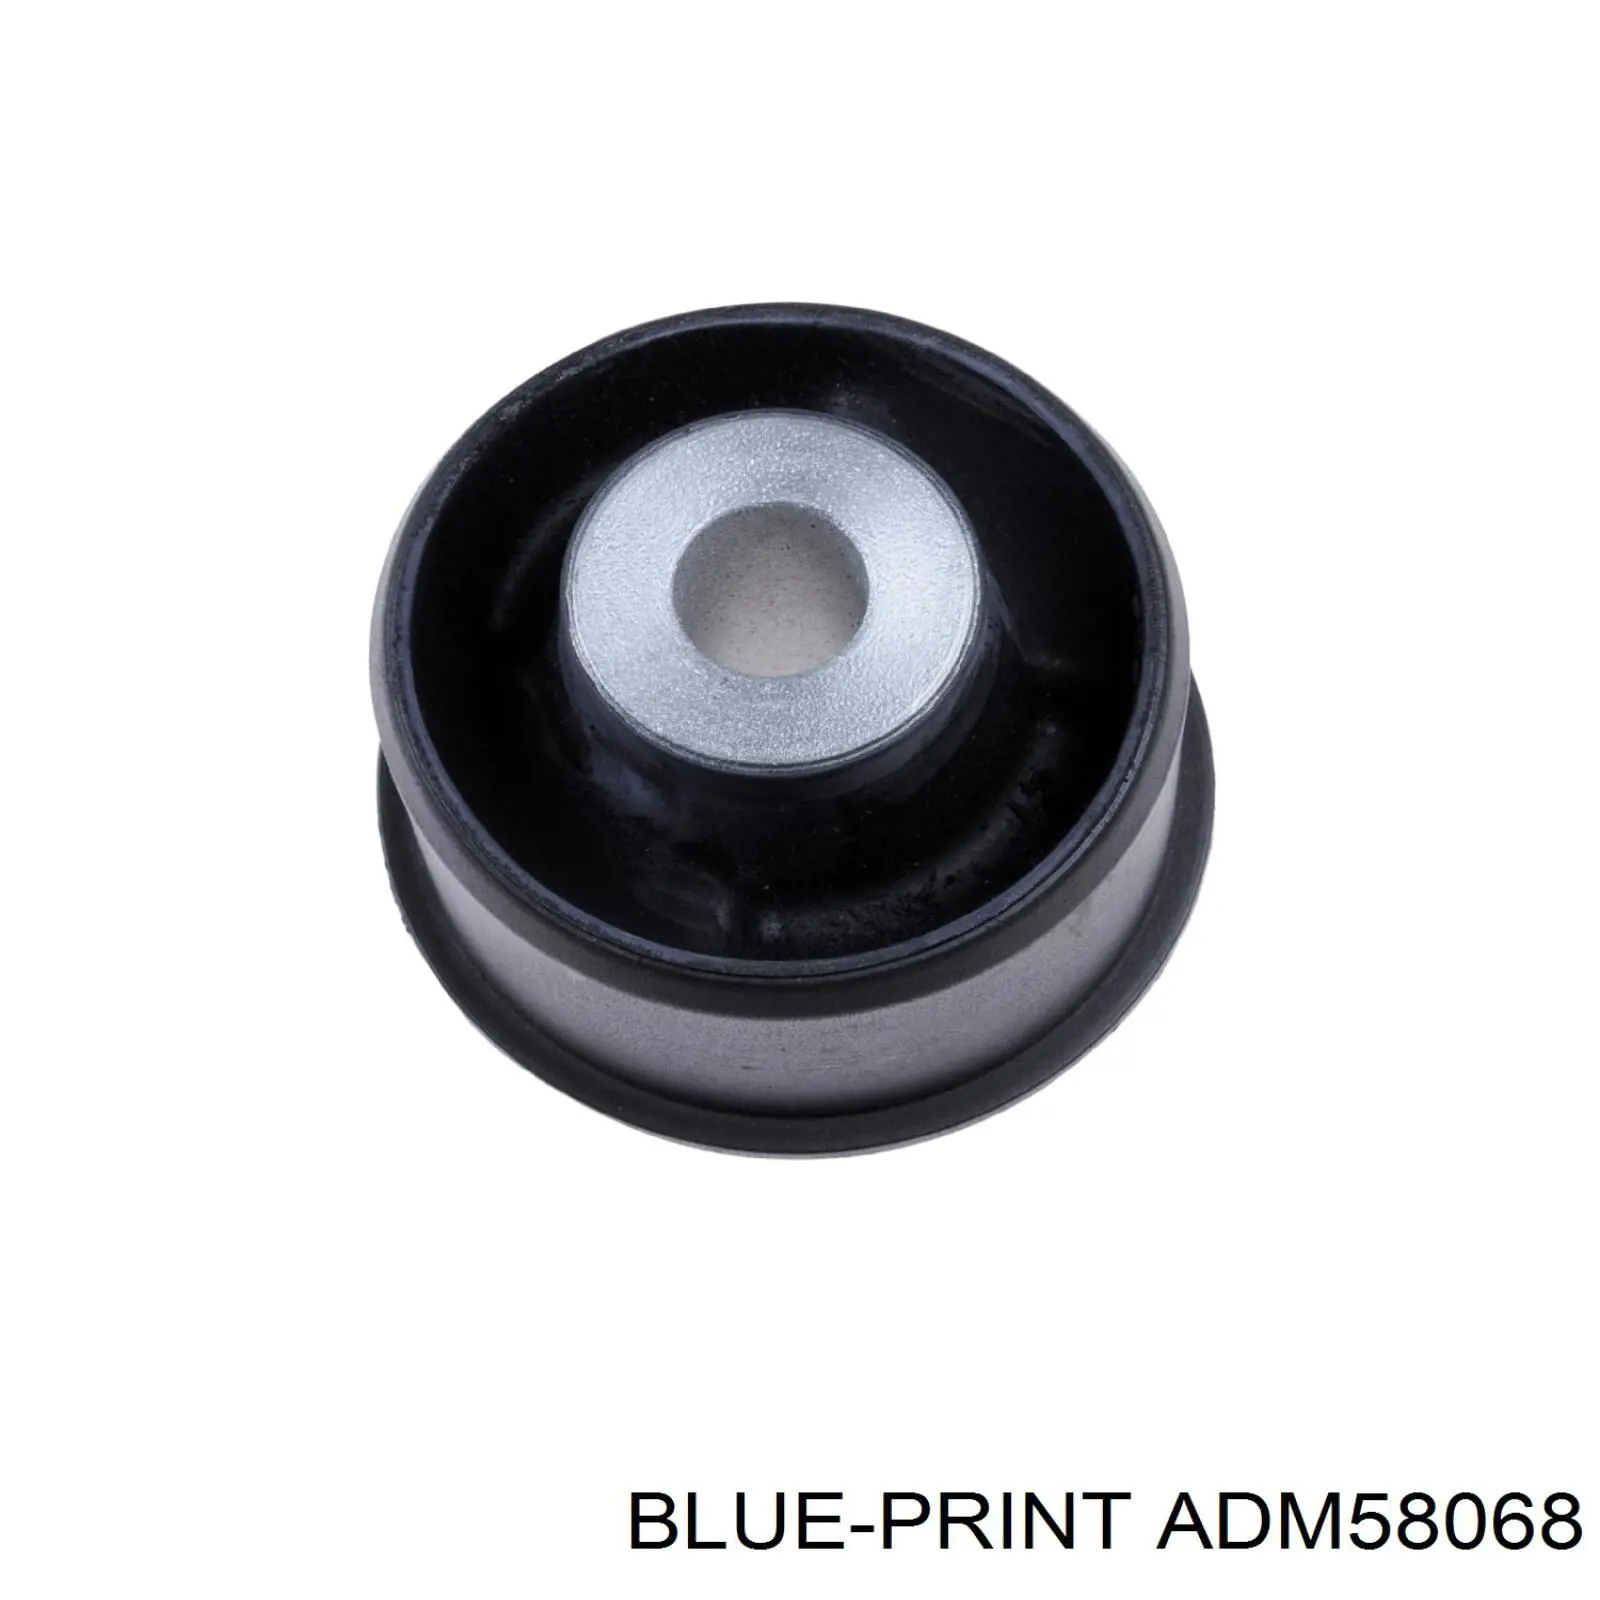 ADM58068 Blue Print suspensión, cuerpo del eje trasero